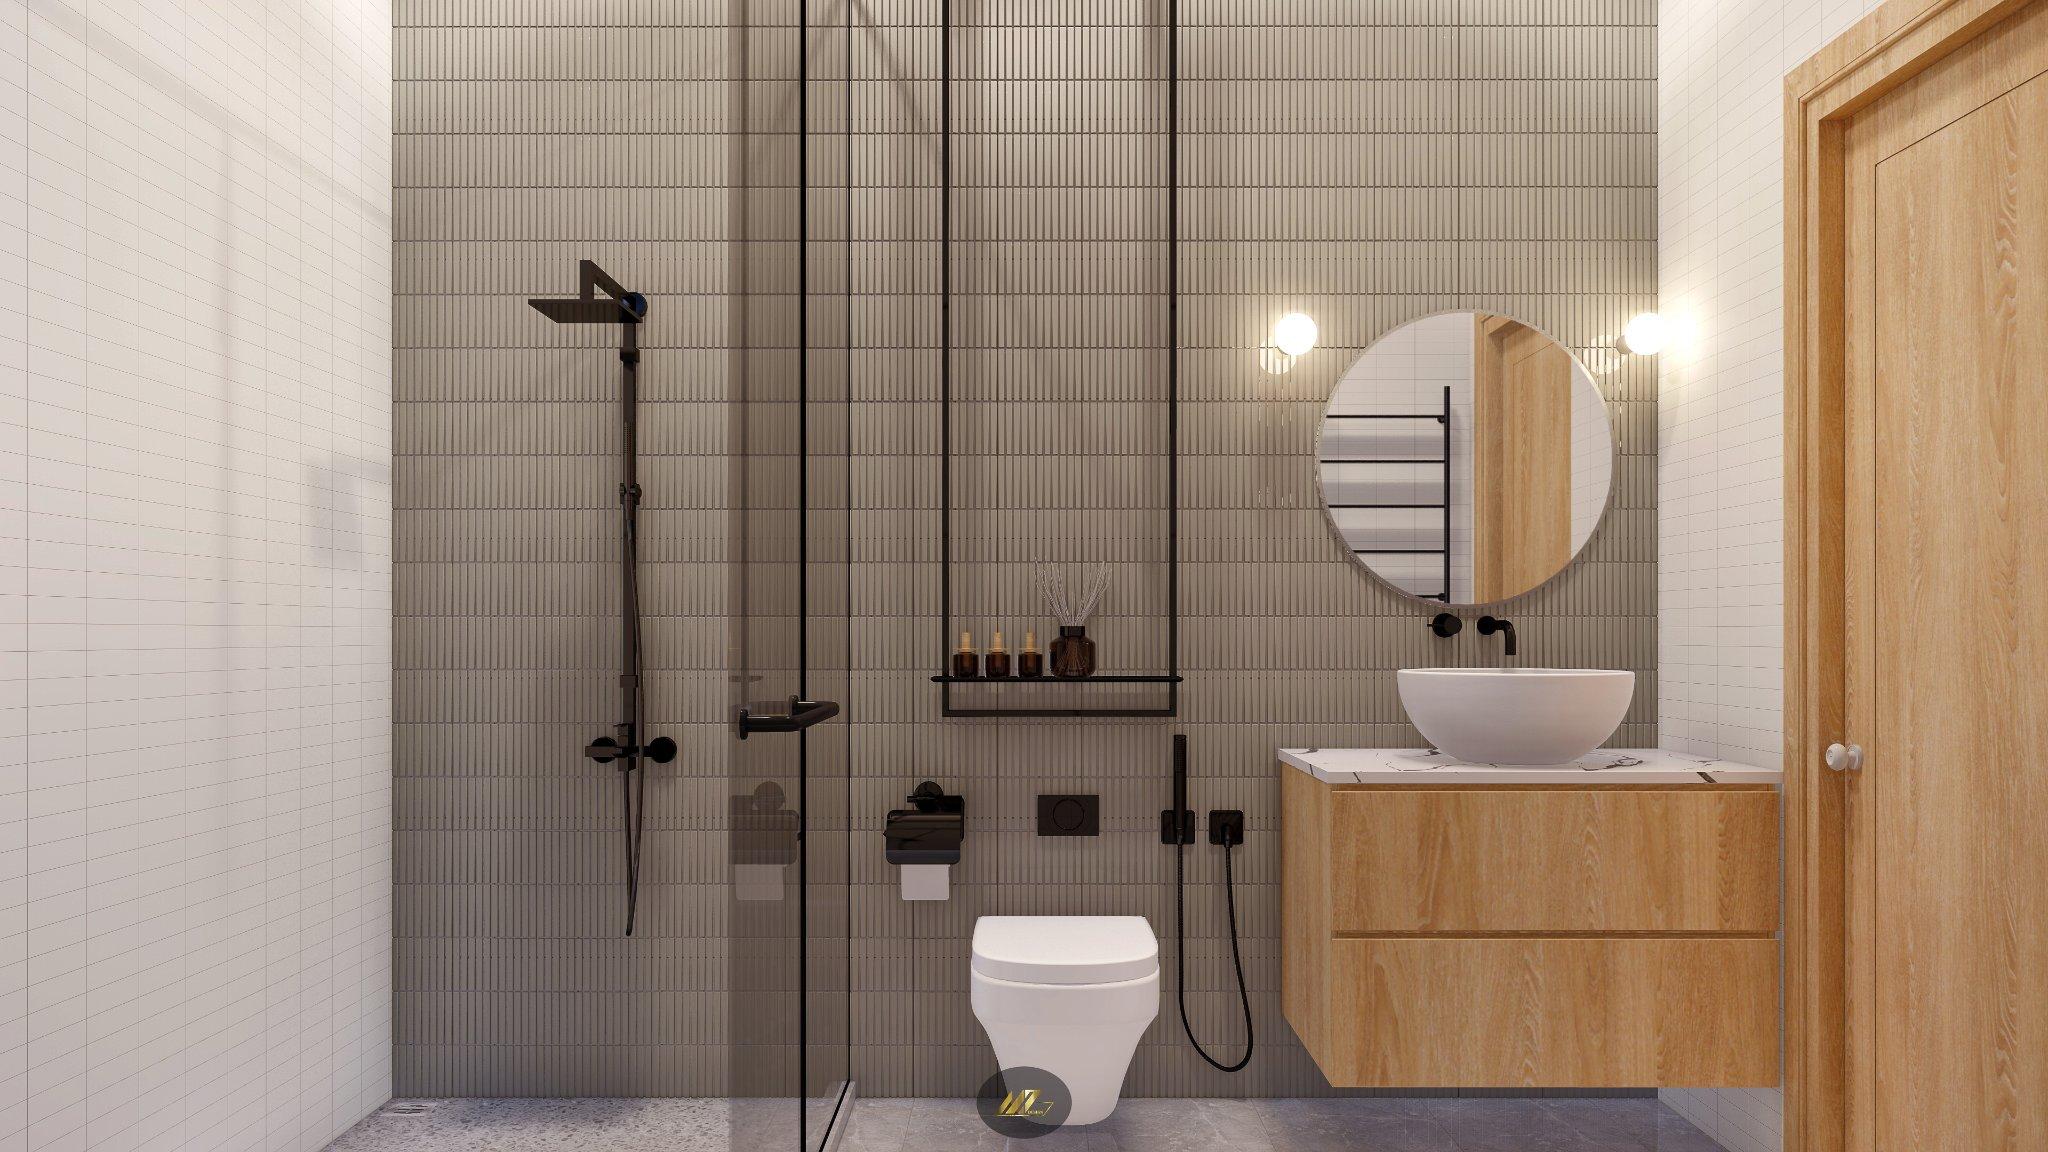  Phòng vệ sinh tầng 1 đơn giản, tiện nghi, dùng vách kính tắm đứng thay bồn vì diện tích hẹp. 